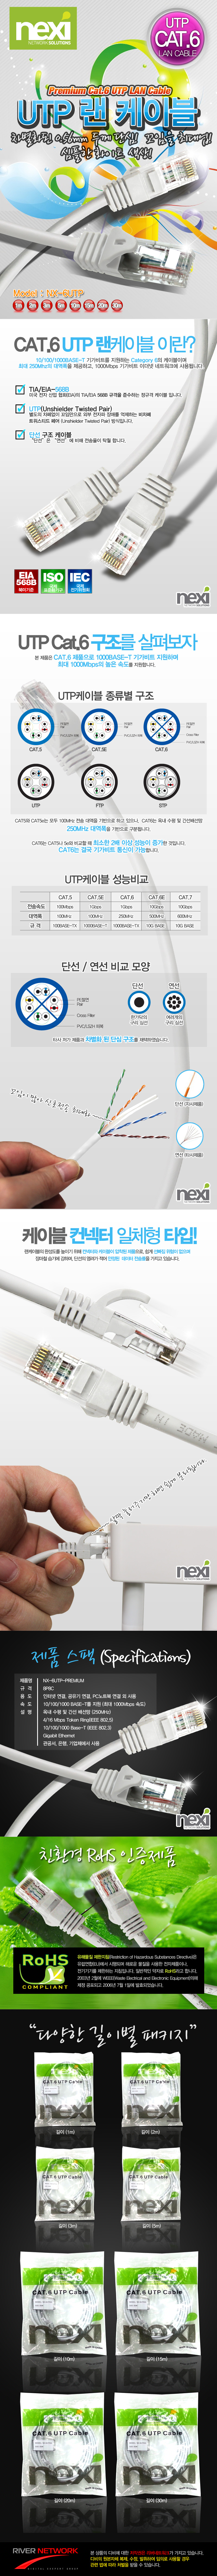 NX-6UTP.jpg